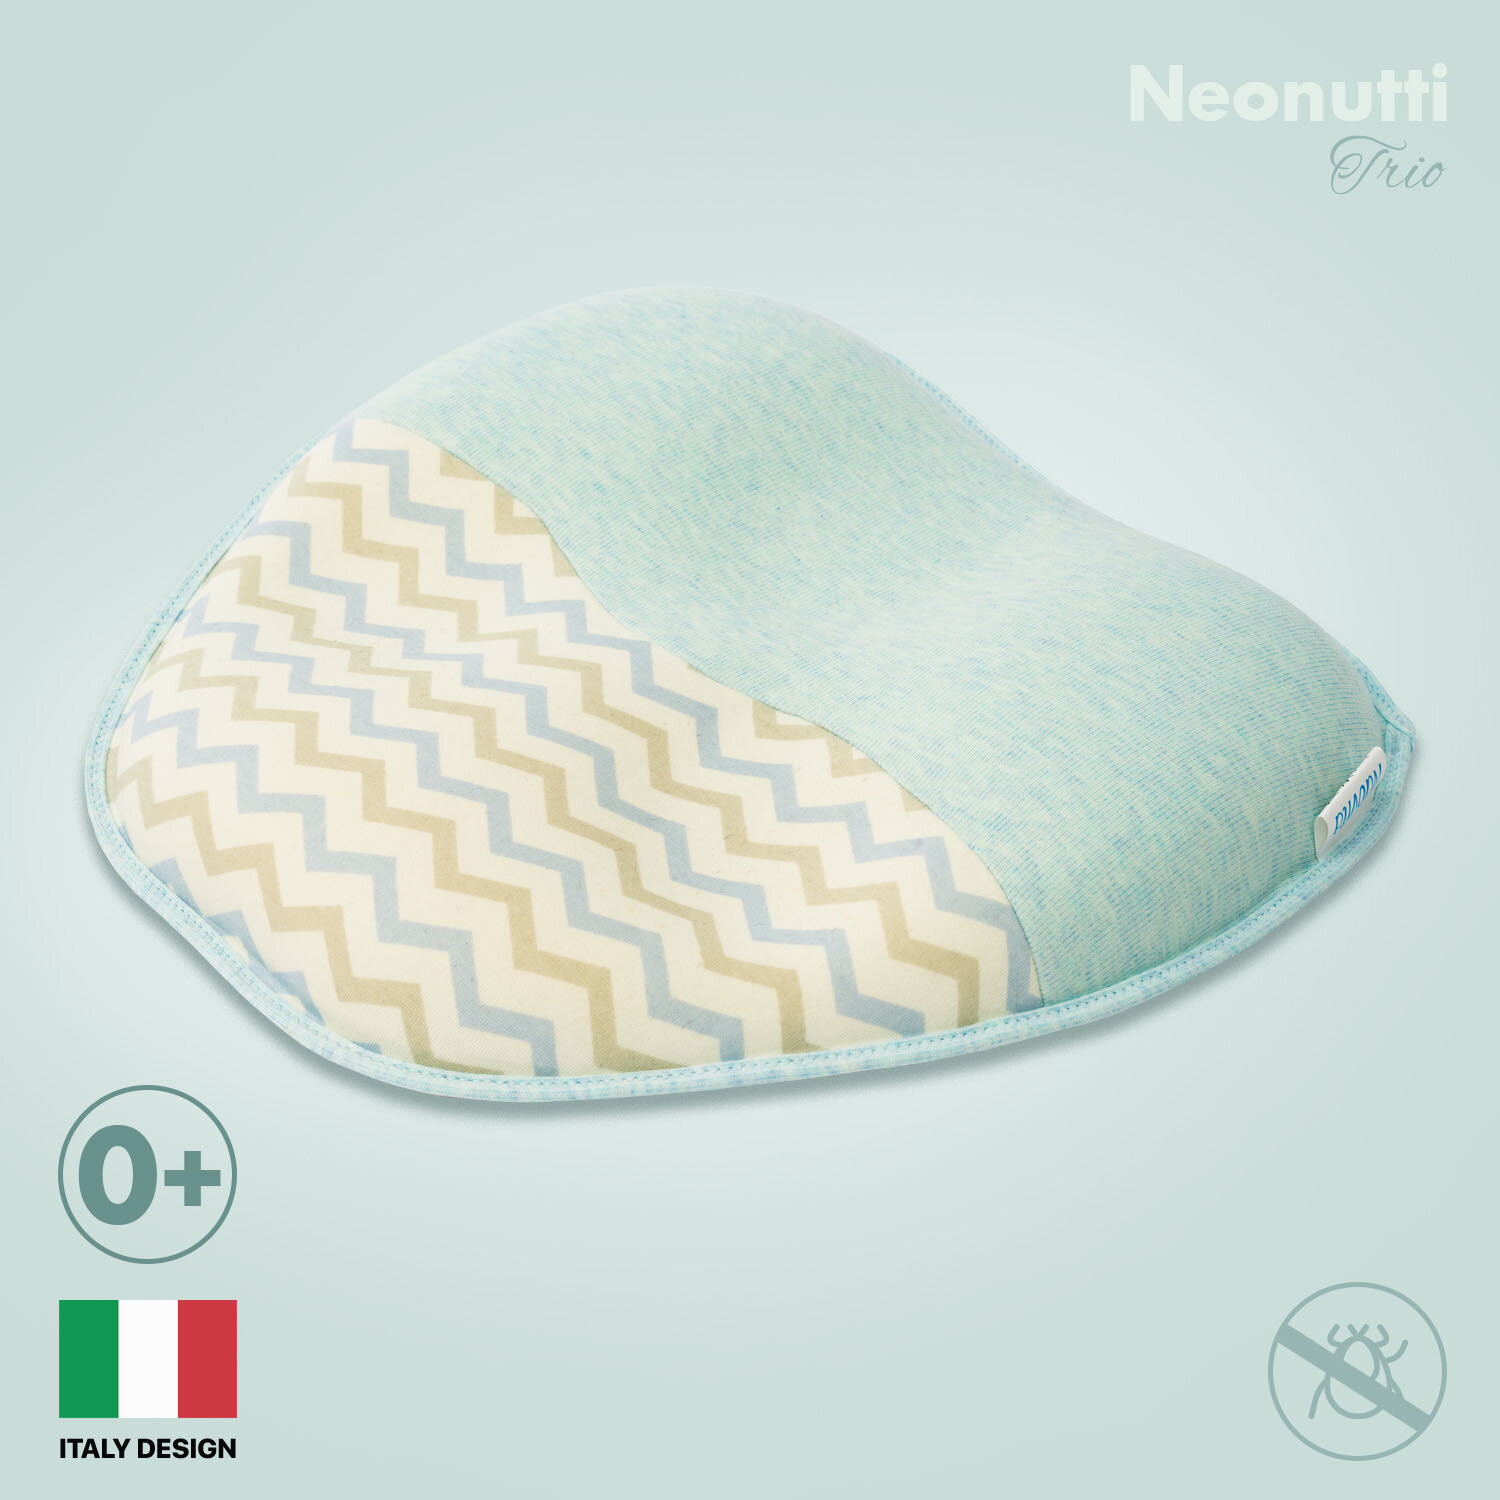 Подушка Nuovita NEONUTTI "Trio Dipinto", для новорожденного (цвета в ассорт.) Сонный гномик - фото №2